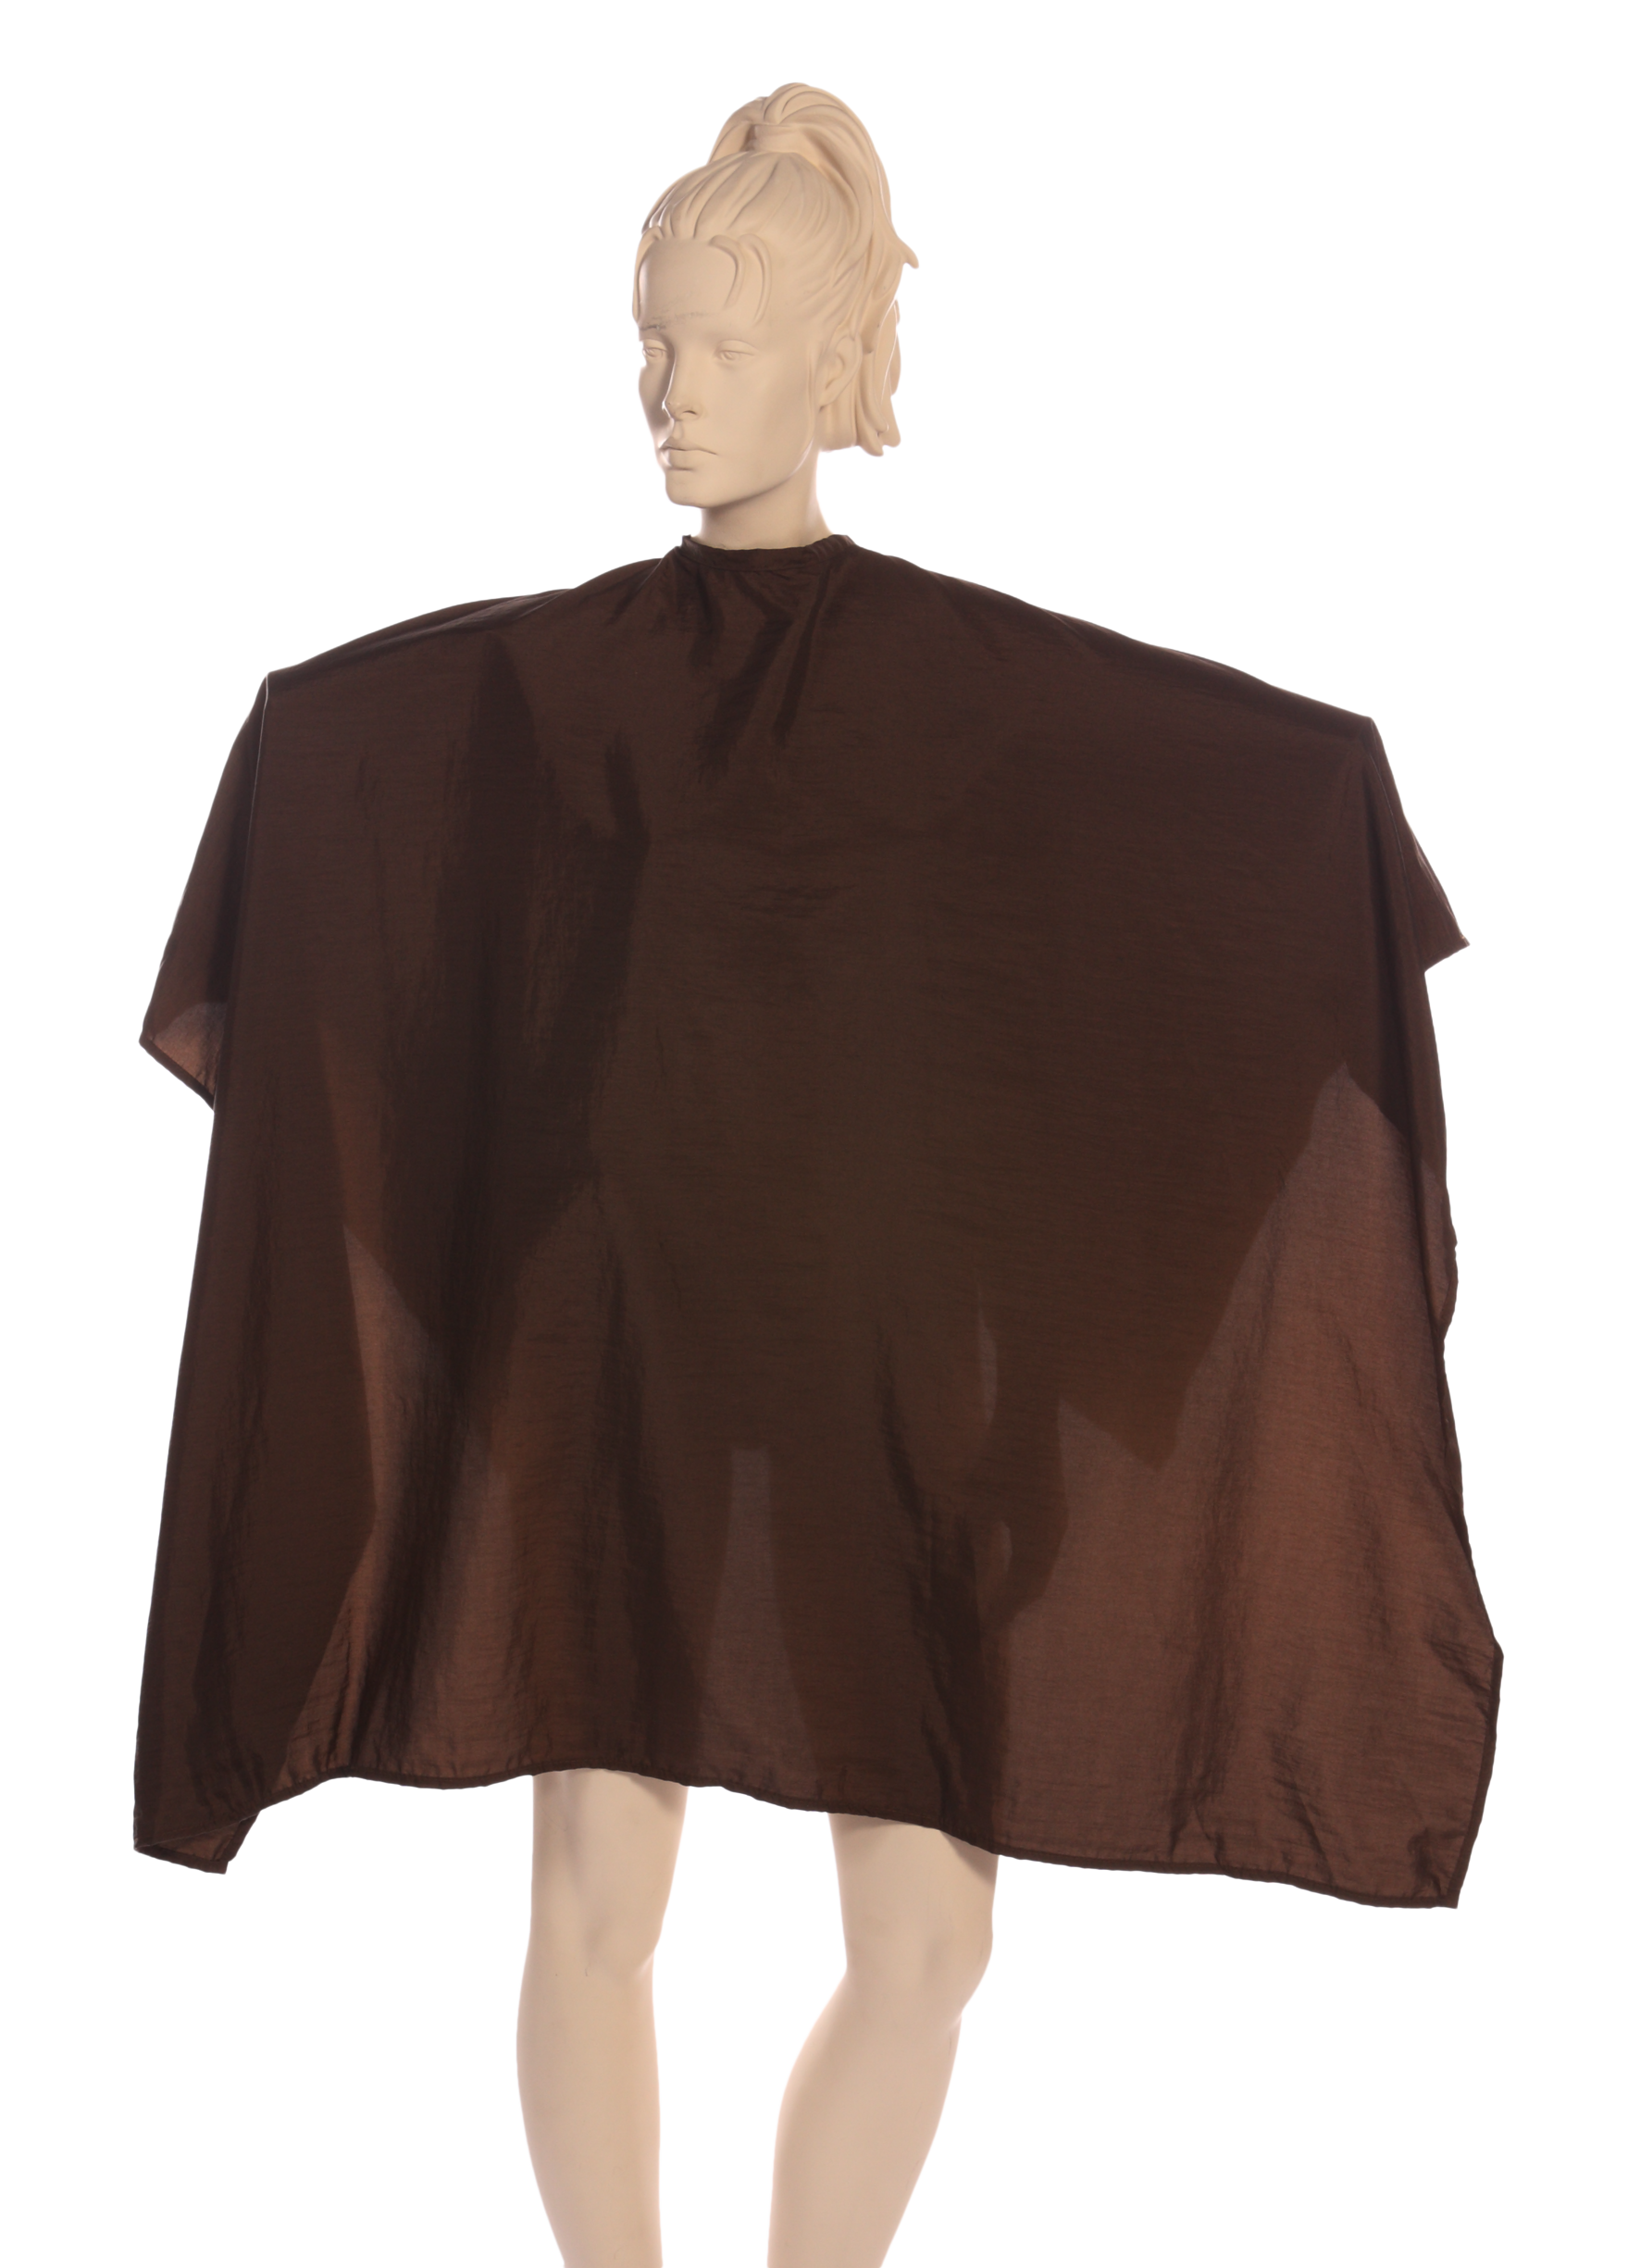 Multi-purpose Salon Cape in Brown Iridescent Silkara Fabric